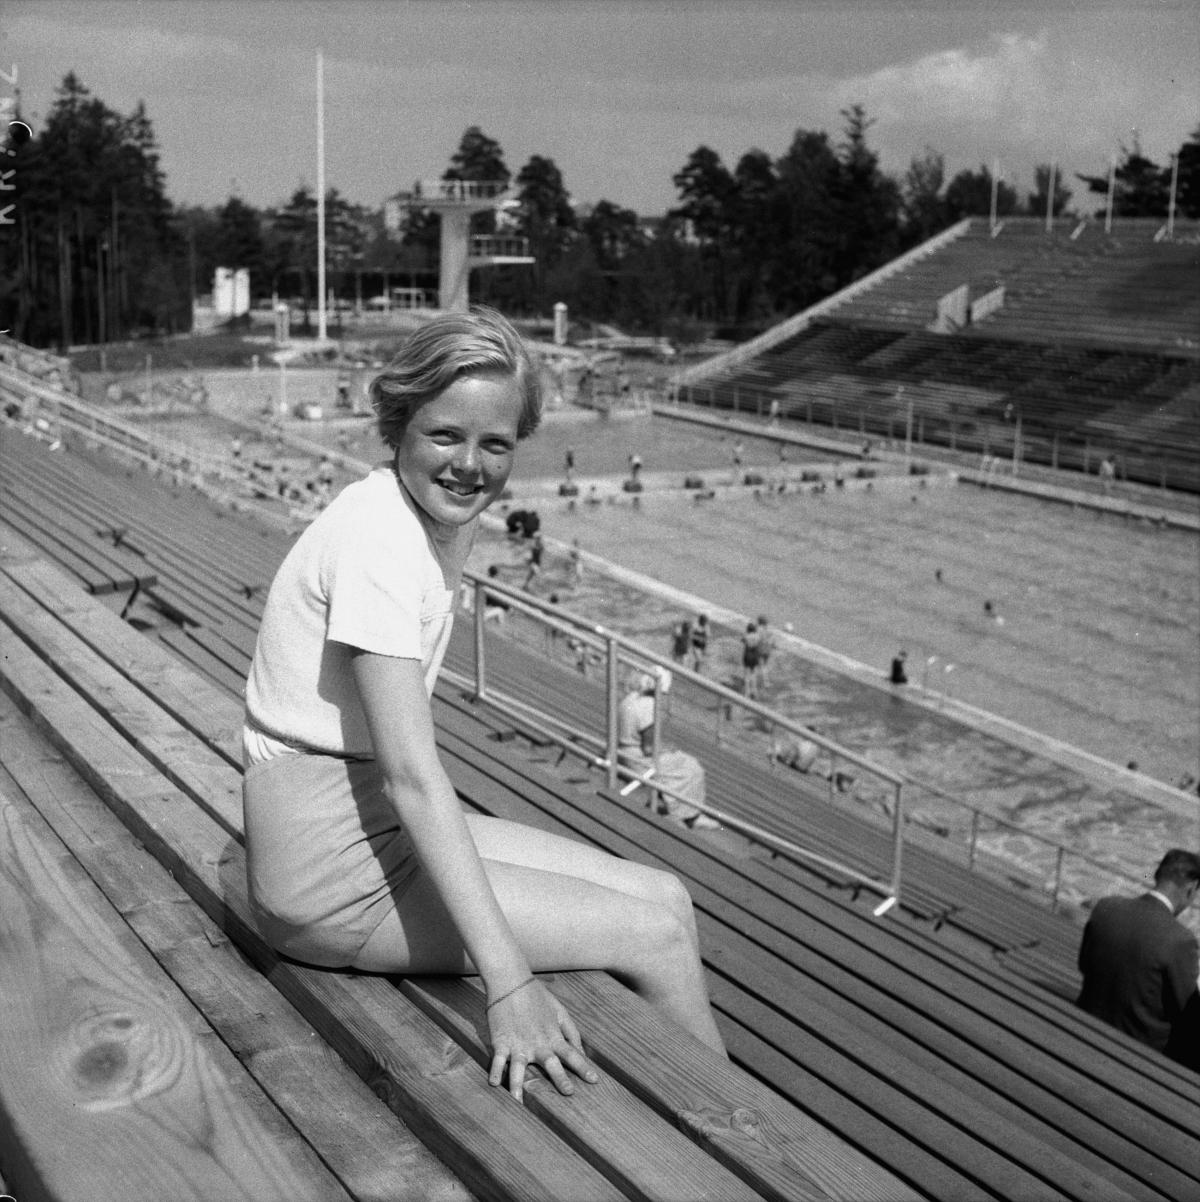 Nuori nainen istuu uimastadionin katsomossa kesällä 1952. Taustalla stadionin allas ja uimahyppytorni.